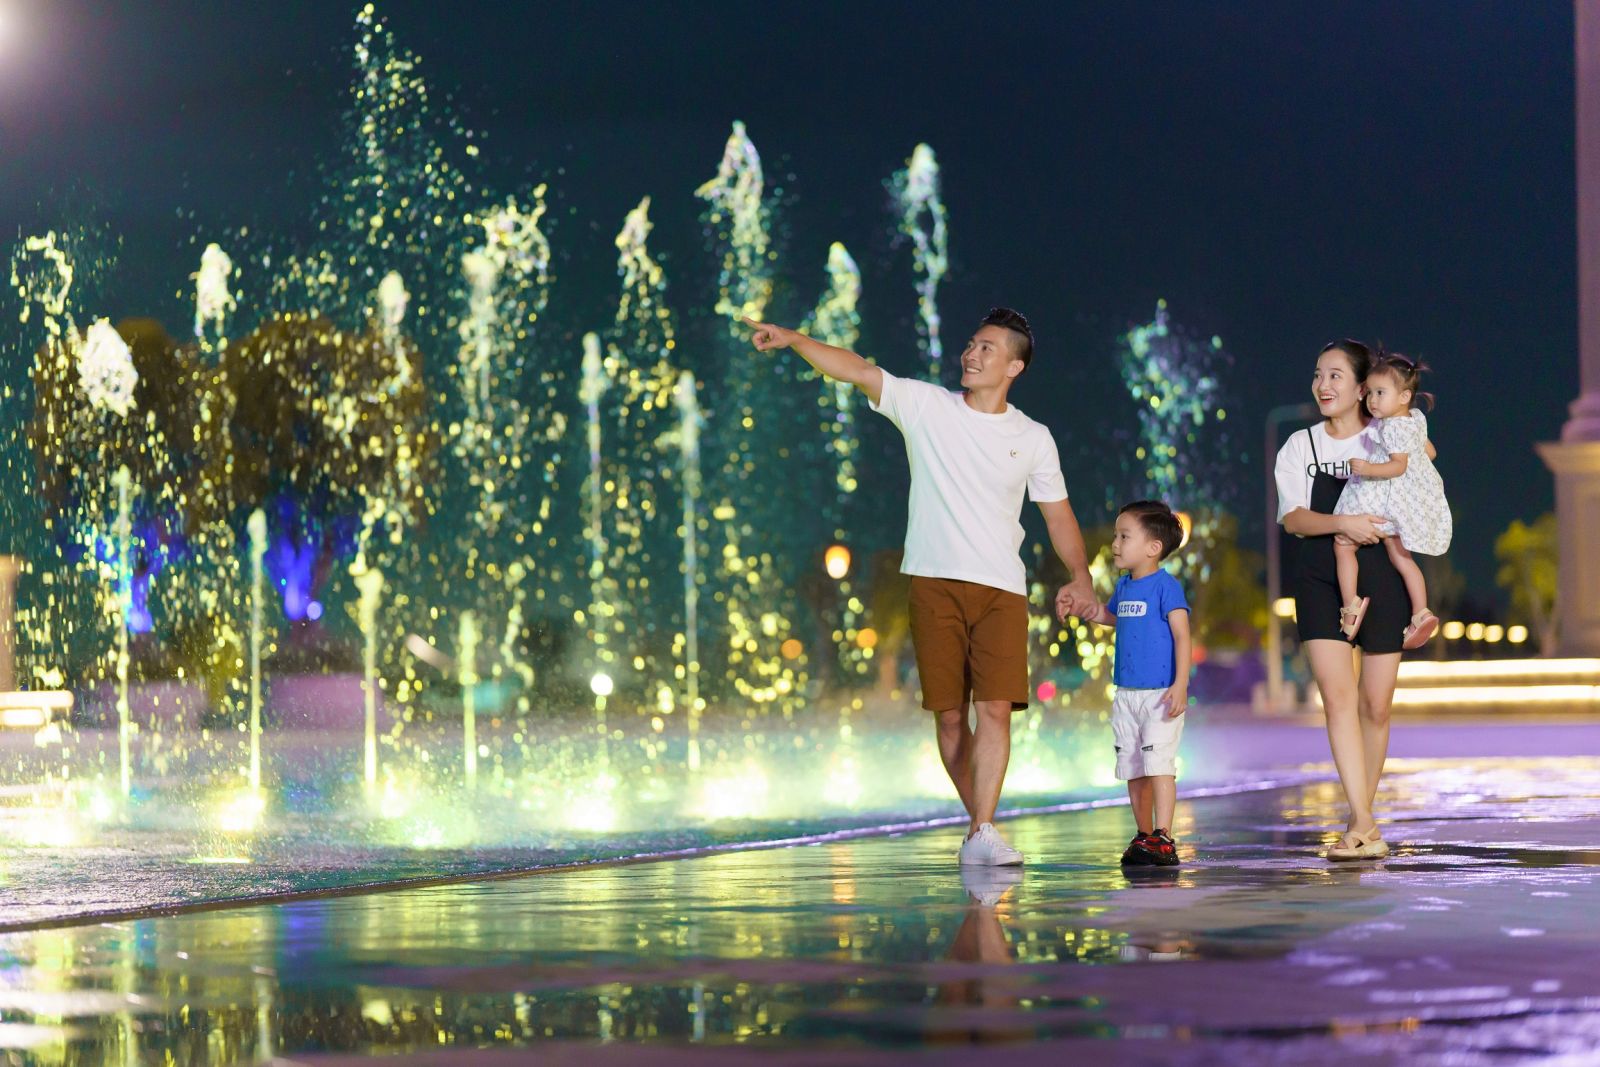 Quốc Cơ – Hồng Phượng dạo chơi tại quảng trường Aqua Marina khi đến Aqua City, cặp đôi đánh giá cao hệ tiện ích hoàn chỉnh từ y tế, giáo dục đến vui chơi giải trí của dự án.